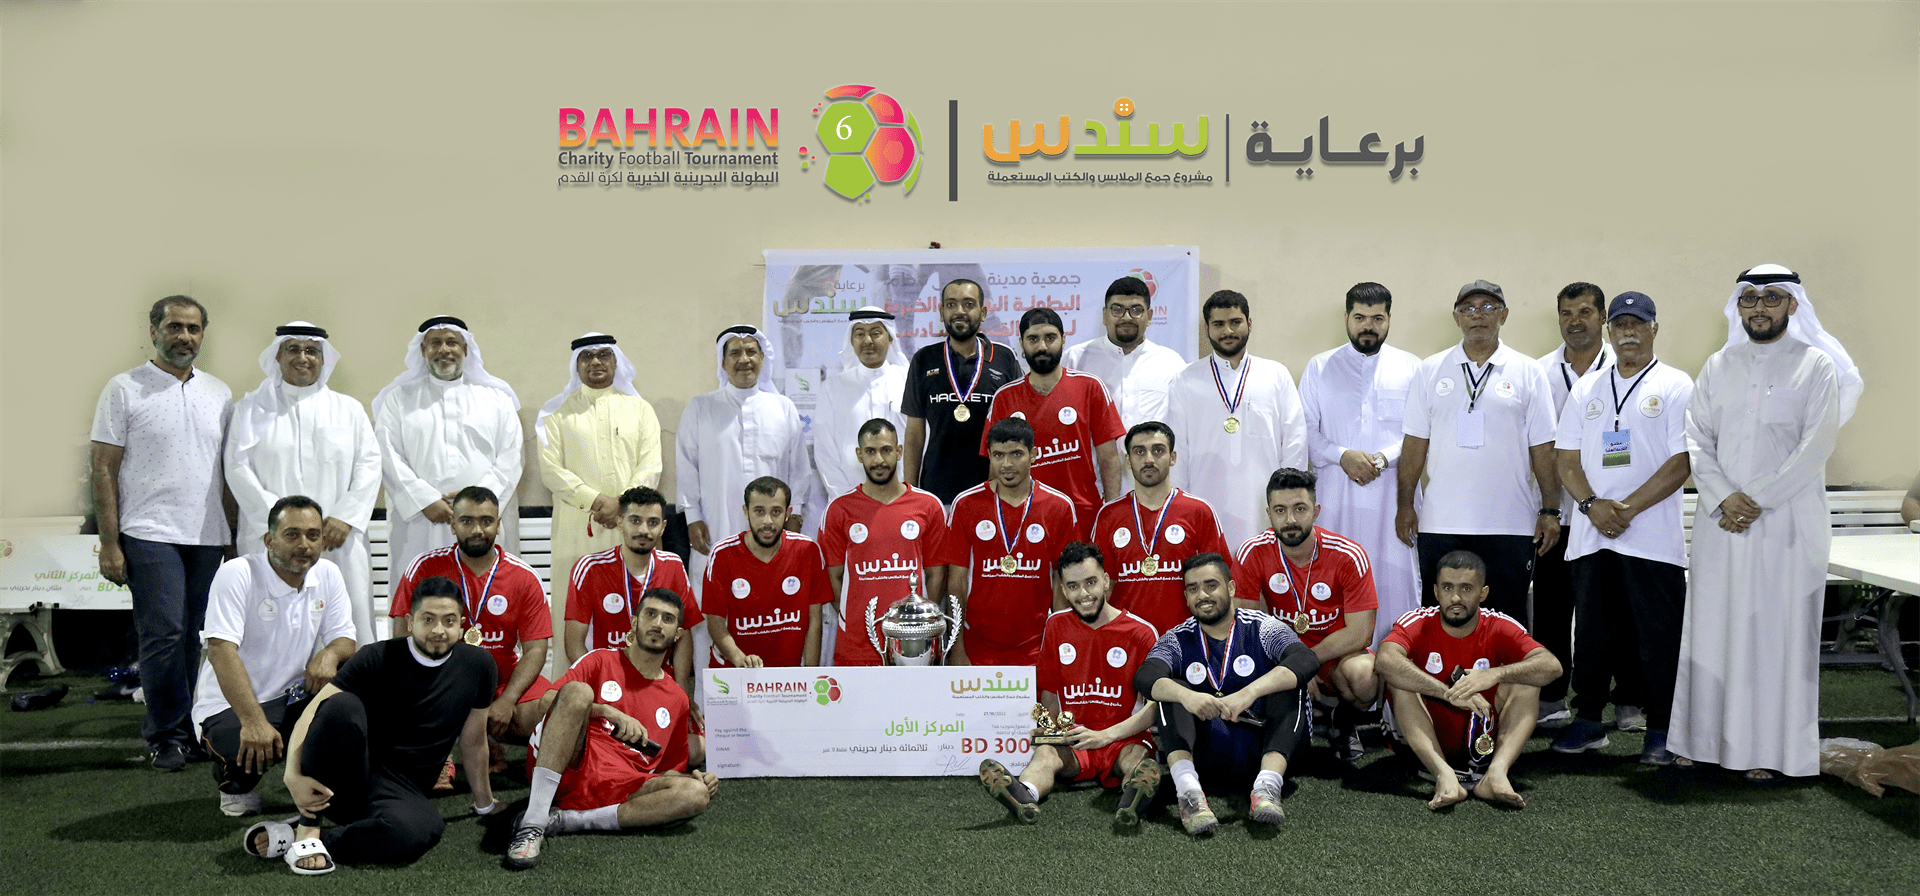 فريق جمعية المحرق للعمل الخيري يتوّج بطلًا للبطولة البحرينية الخيرية السادسة لكرة القدم